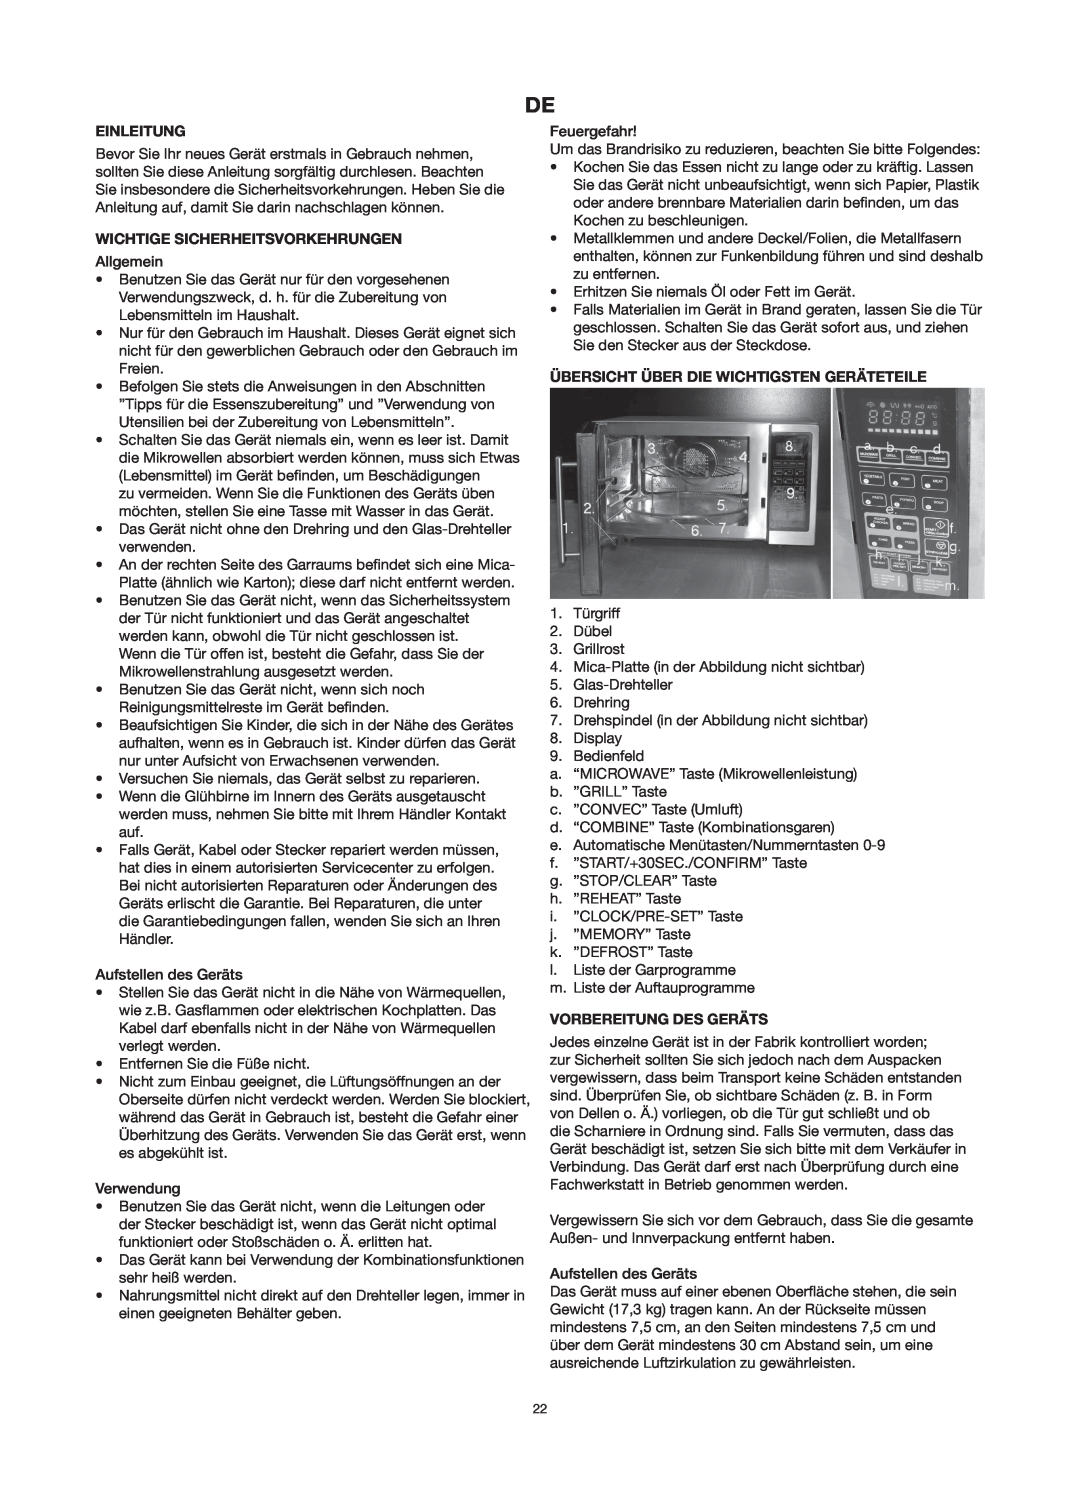 Melissa 753-125 manual Einleitung, Wichtige Sicherheitsvorkehrungen, Übersicht Über Die Wichtigsten Geräteteile 